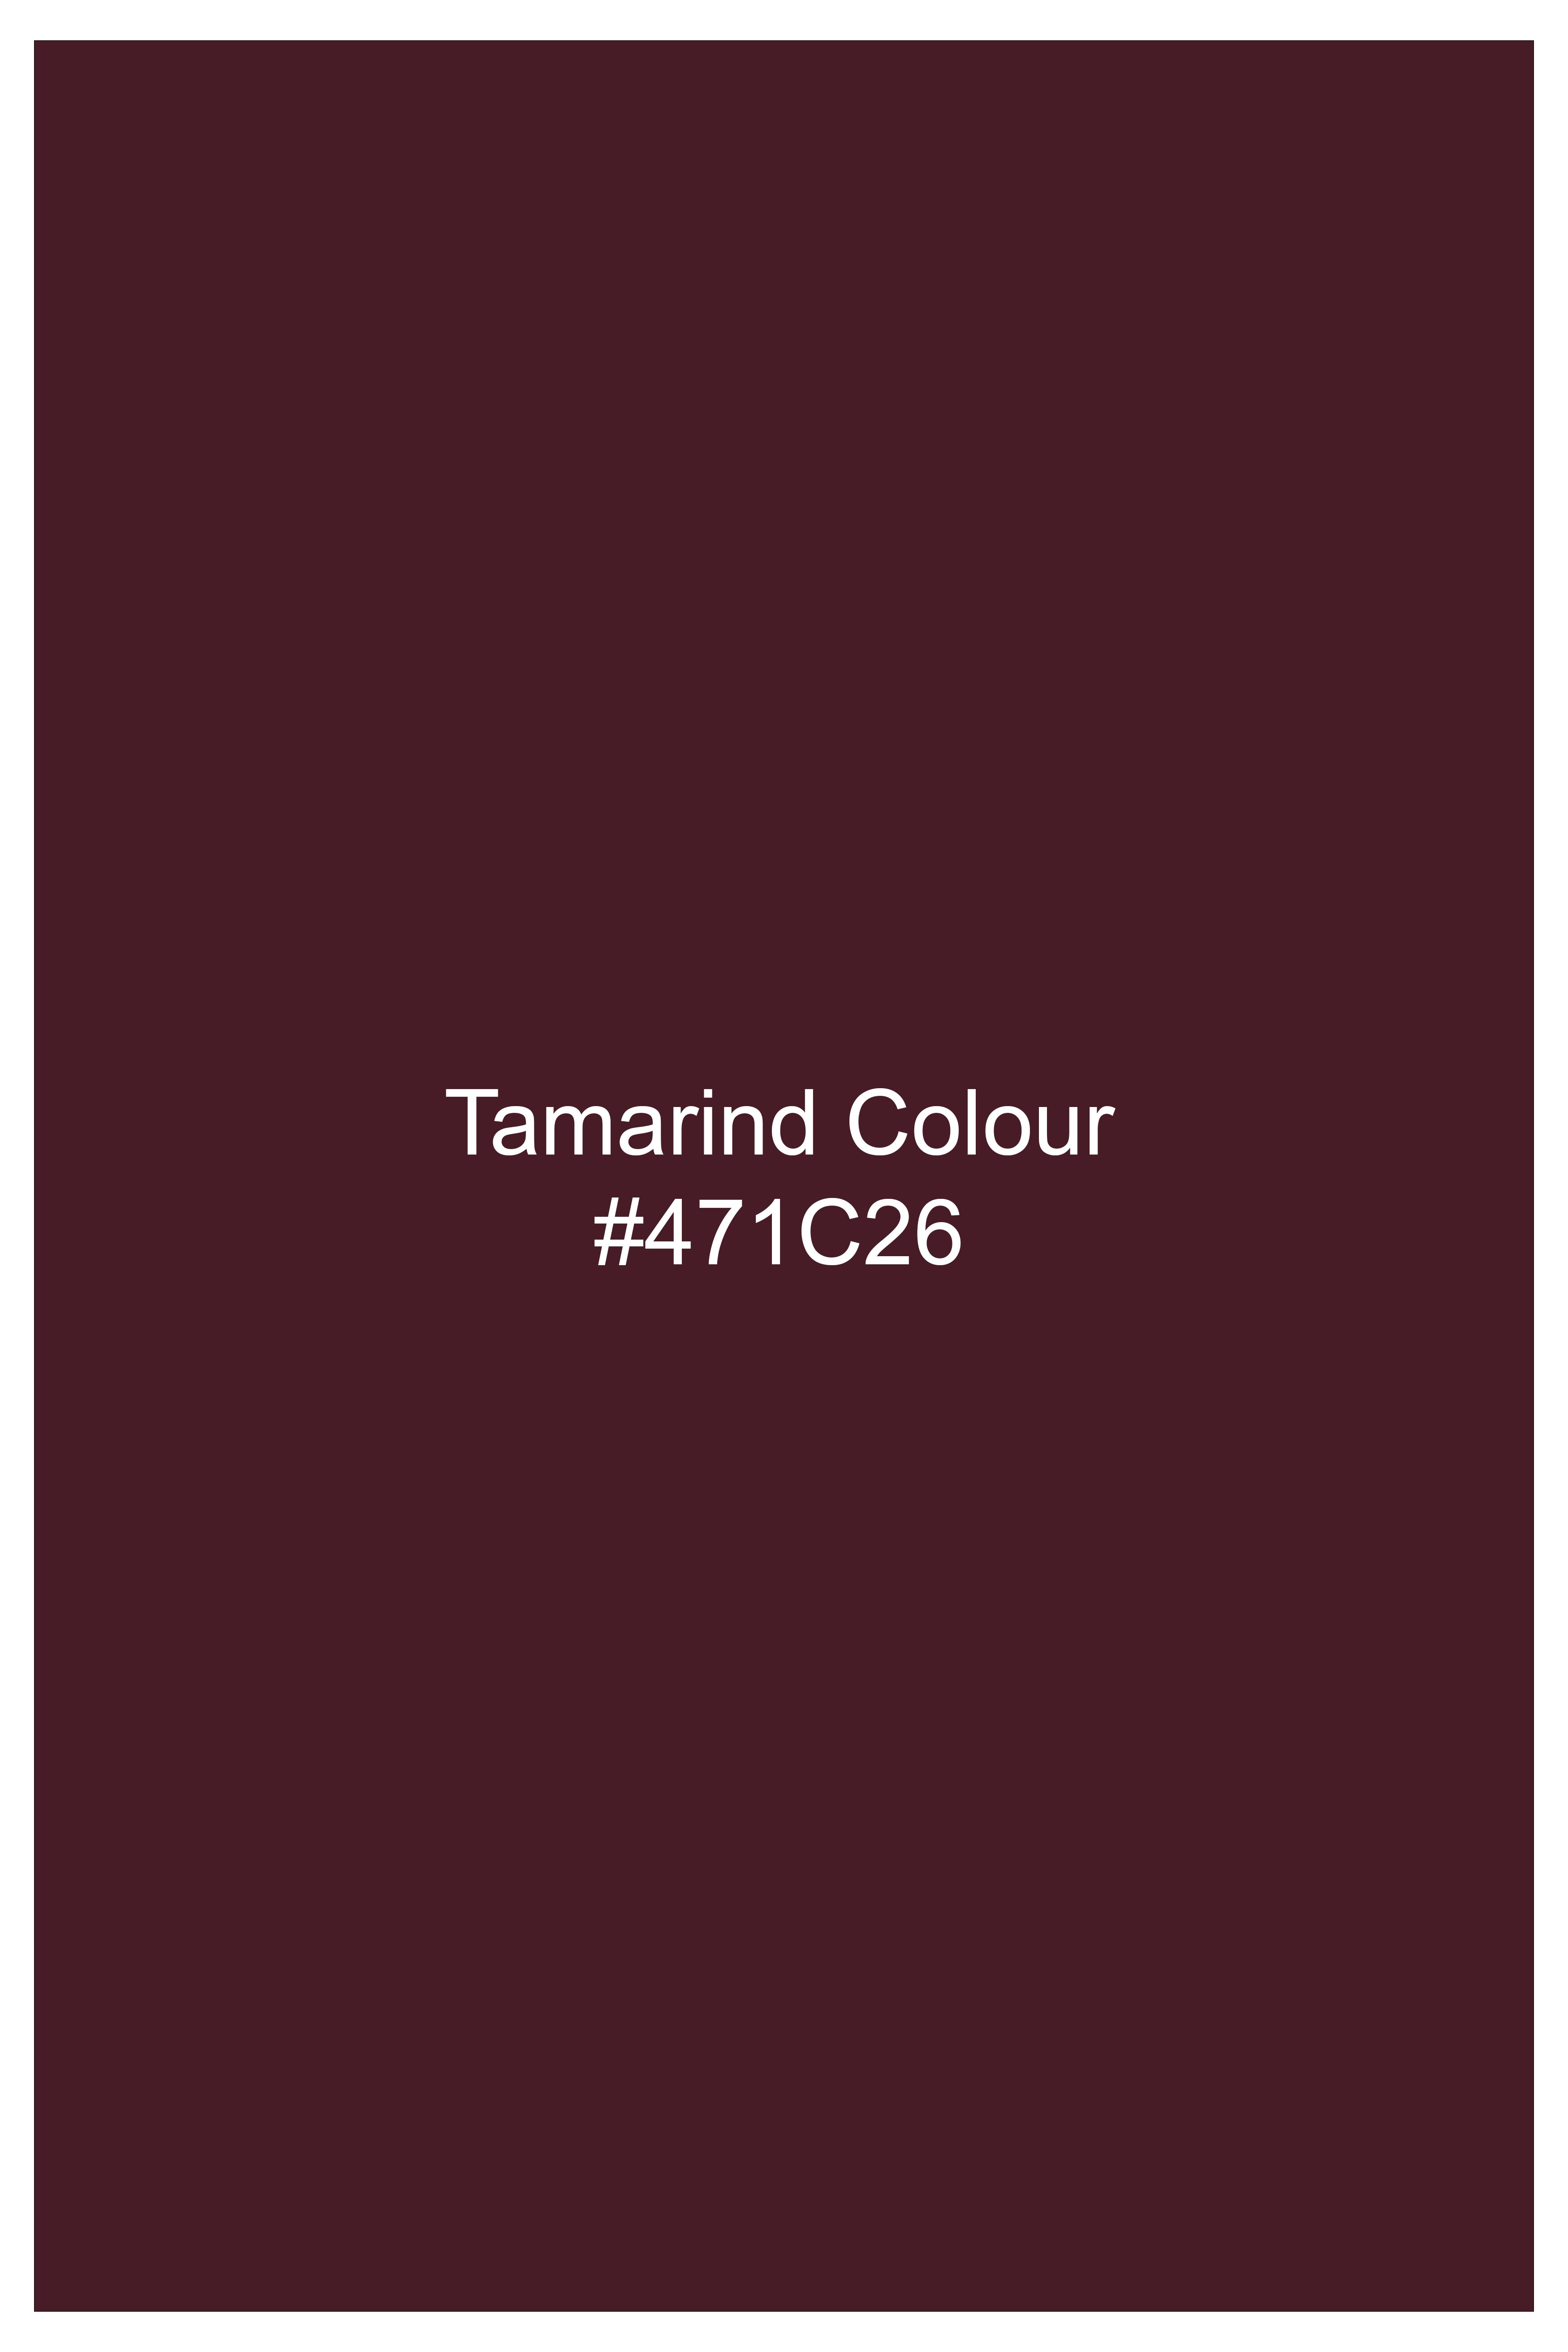 Tamarind Maroon Wool Blend Pant